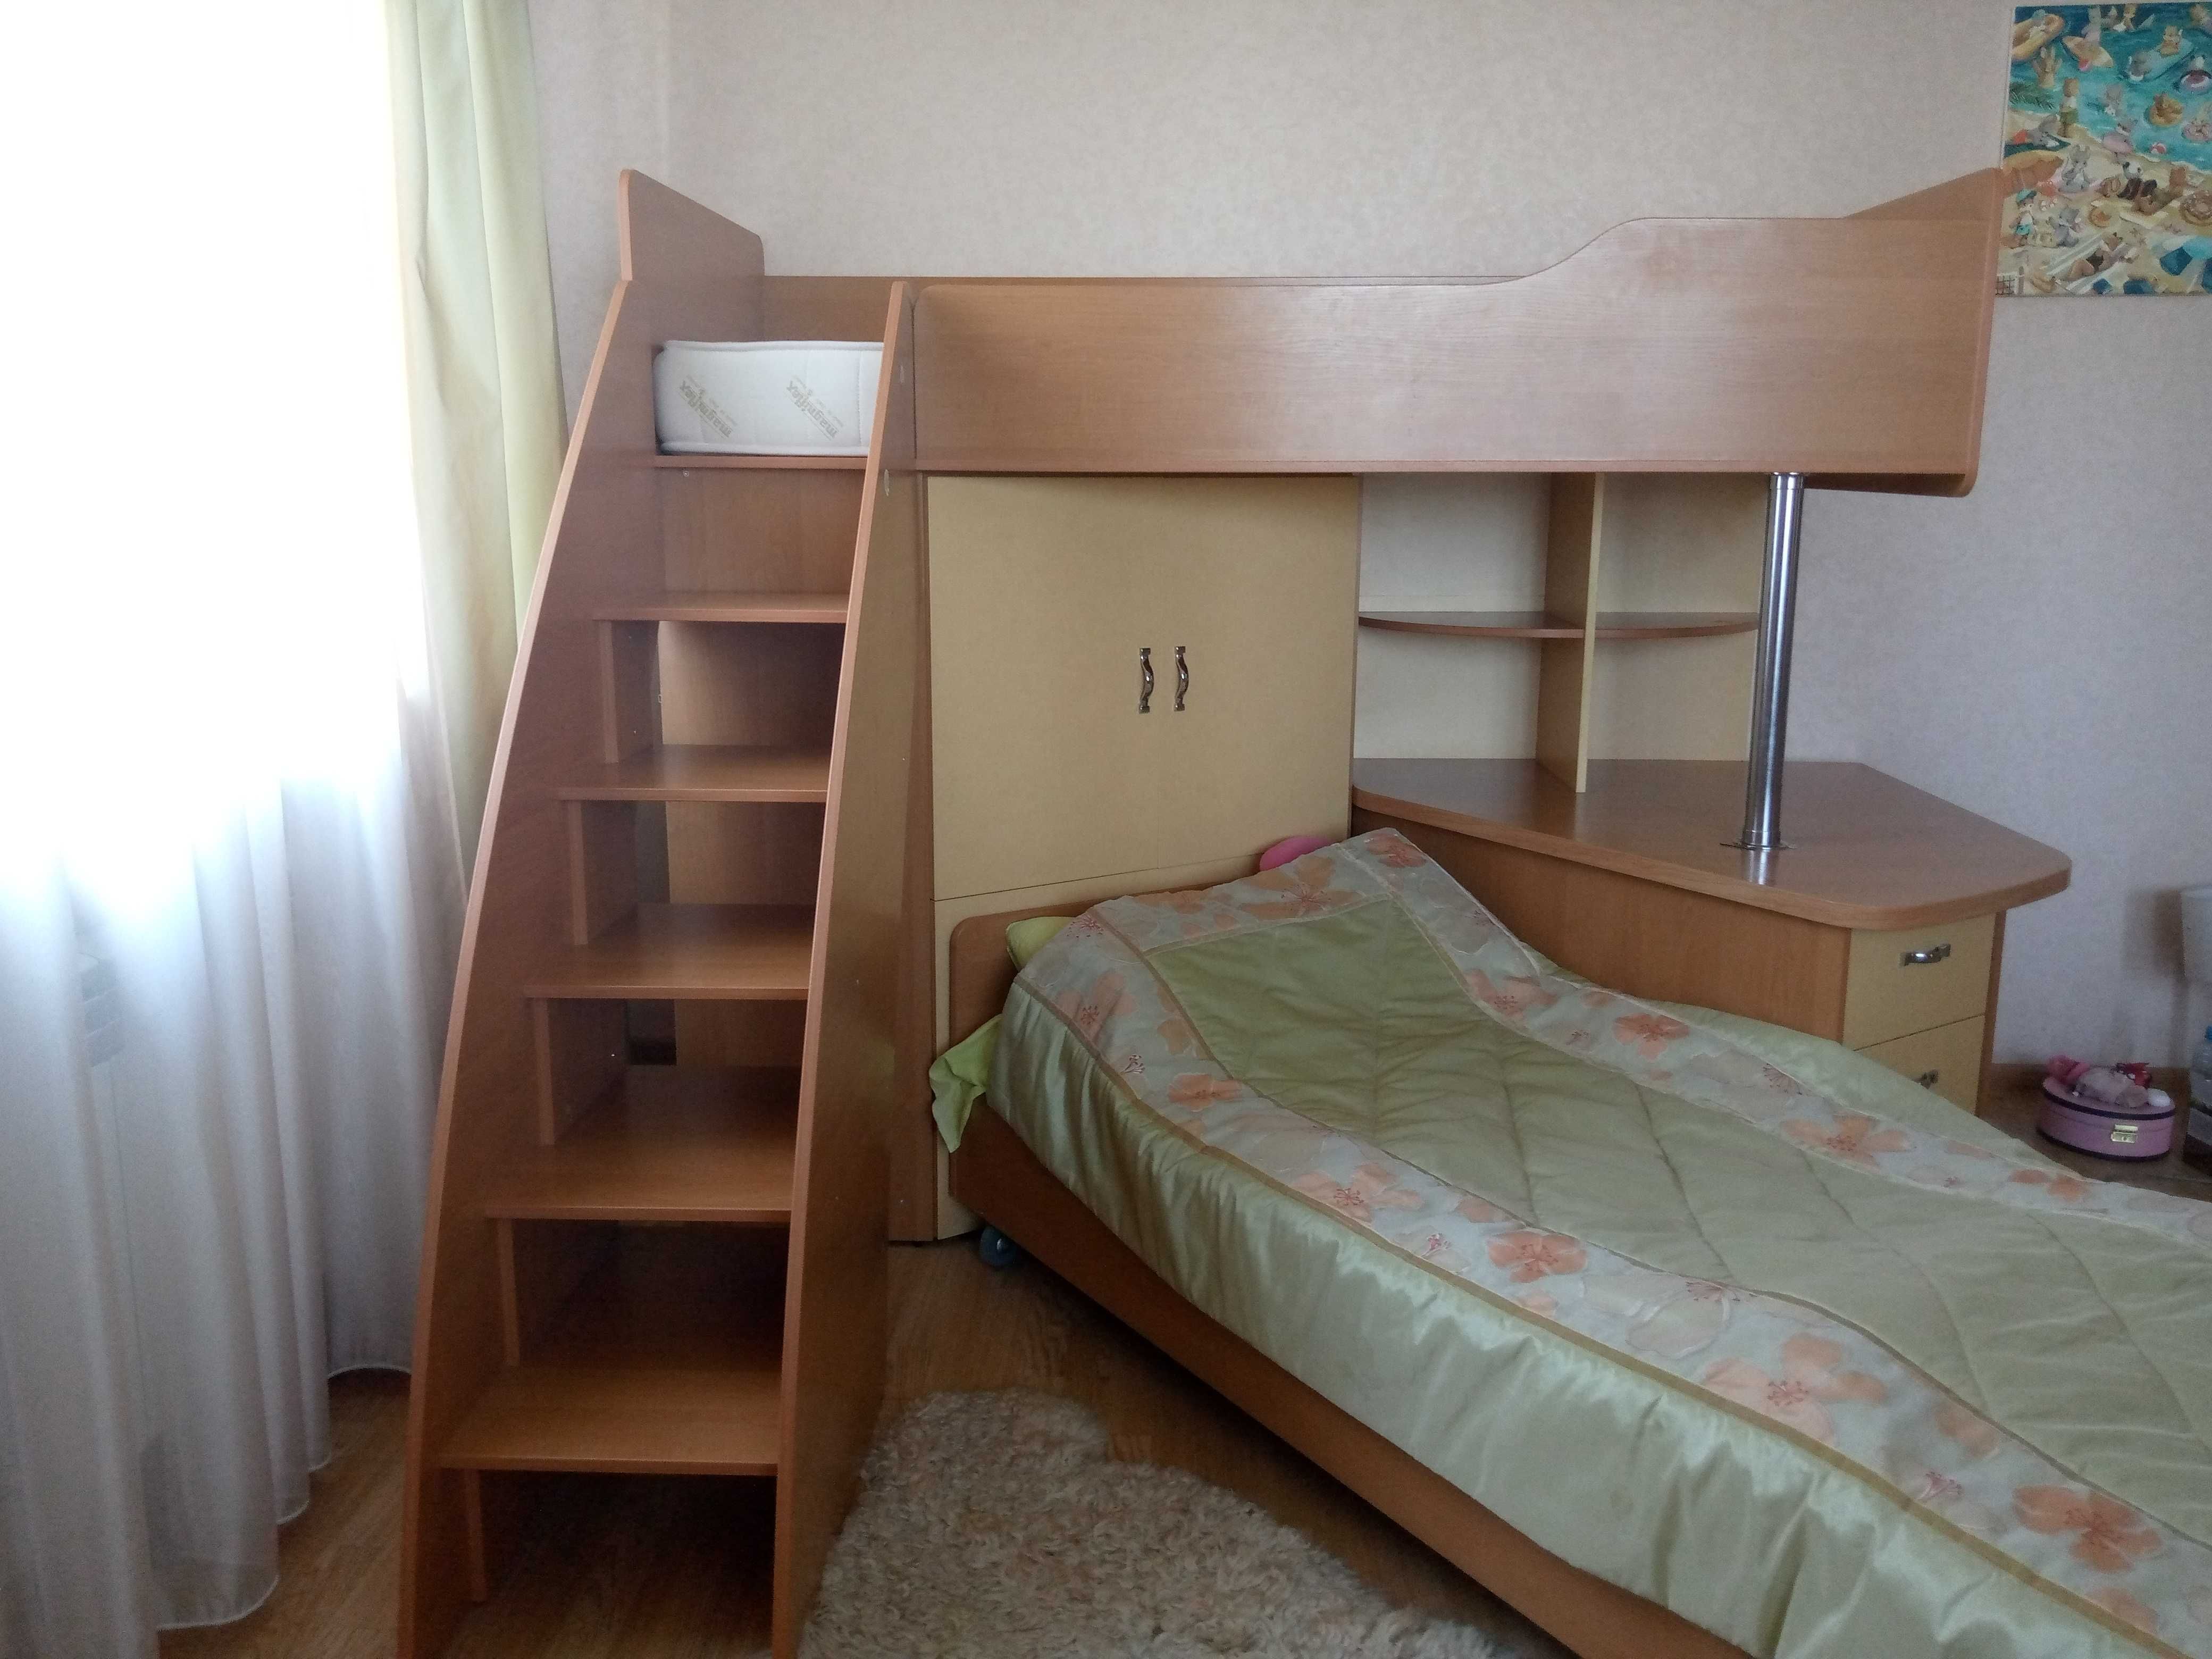 Кровать двухъярусная со шкафом и робочим столом б/у